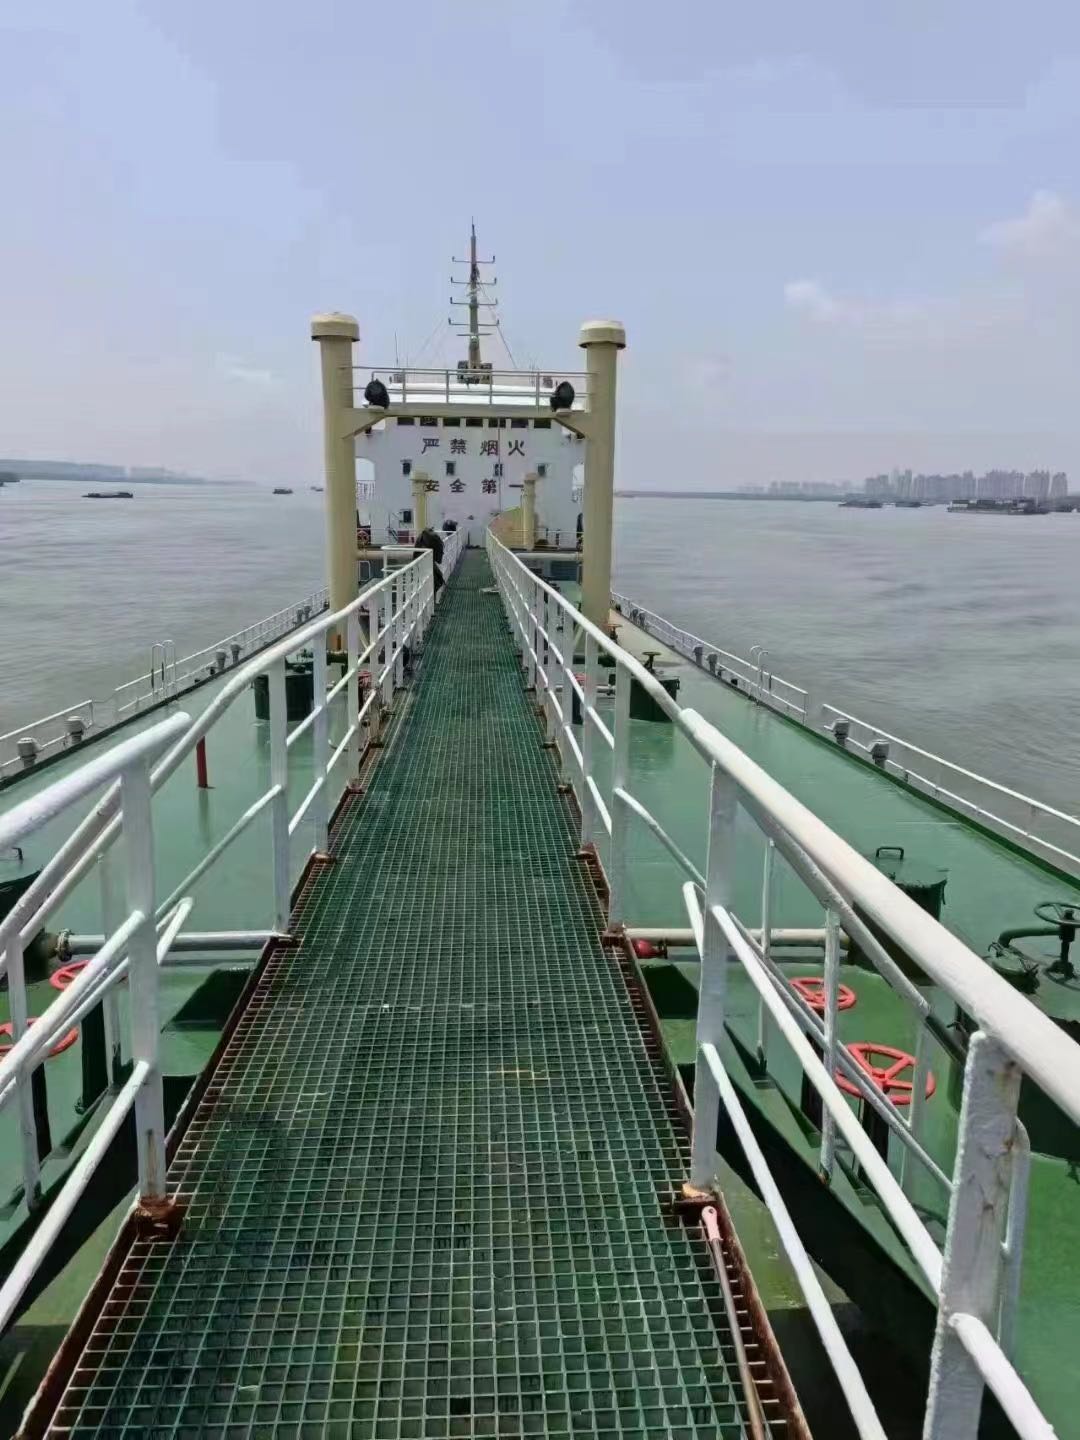 低价出售3440吨双壳油船 2002年浙江建造 2016年改建双壳